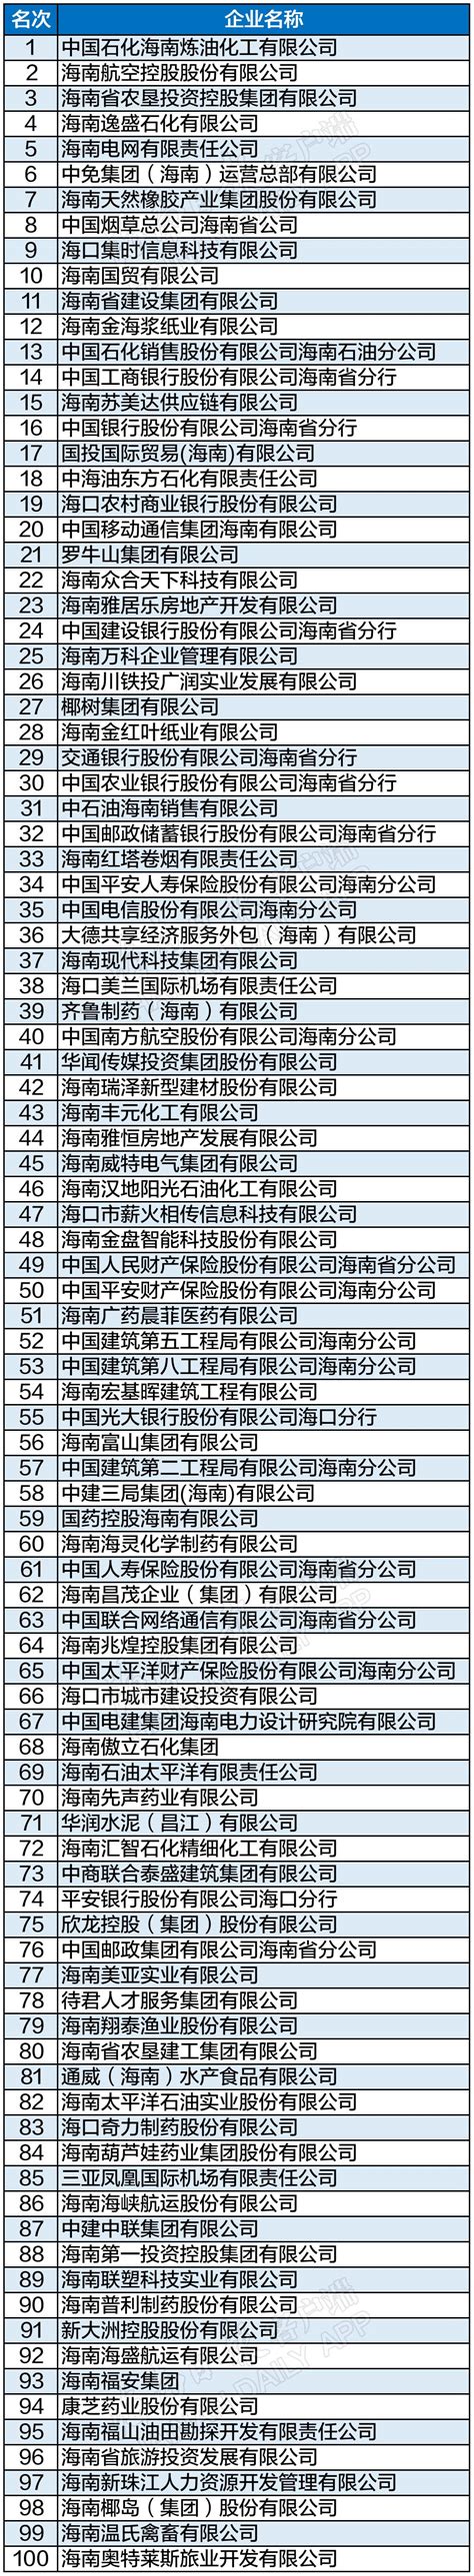 2021海南省企业100强榜单出炉！这些企业上榜 - 热点聚焦